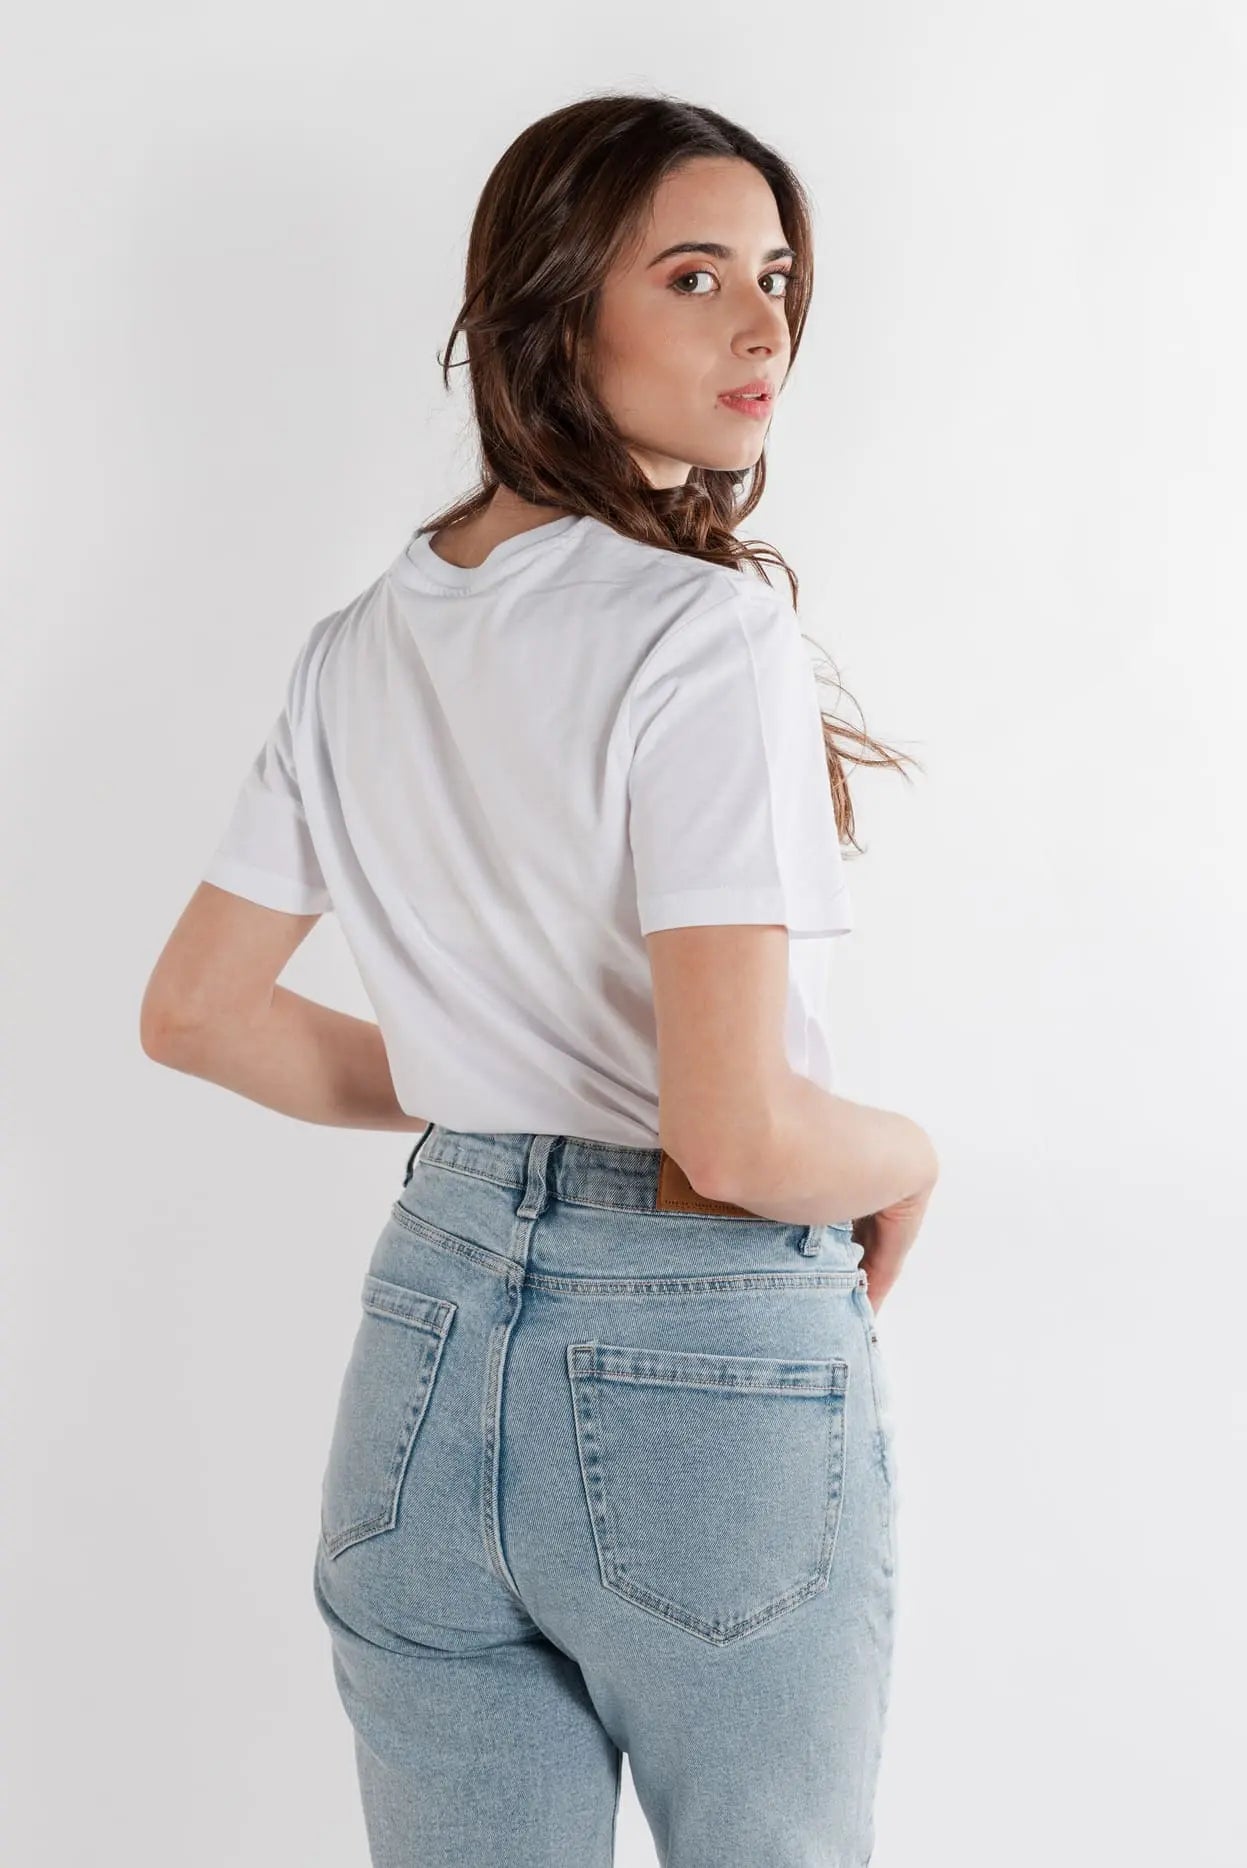 Camiseta blanca 100% algodón ecológico con mujer de espaldas